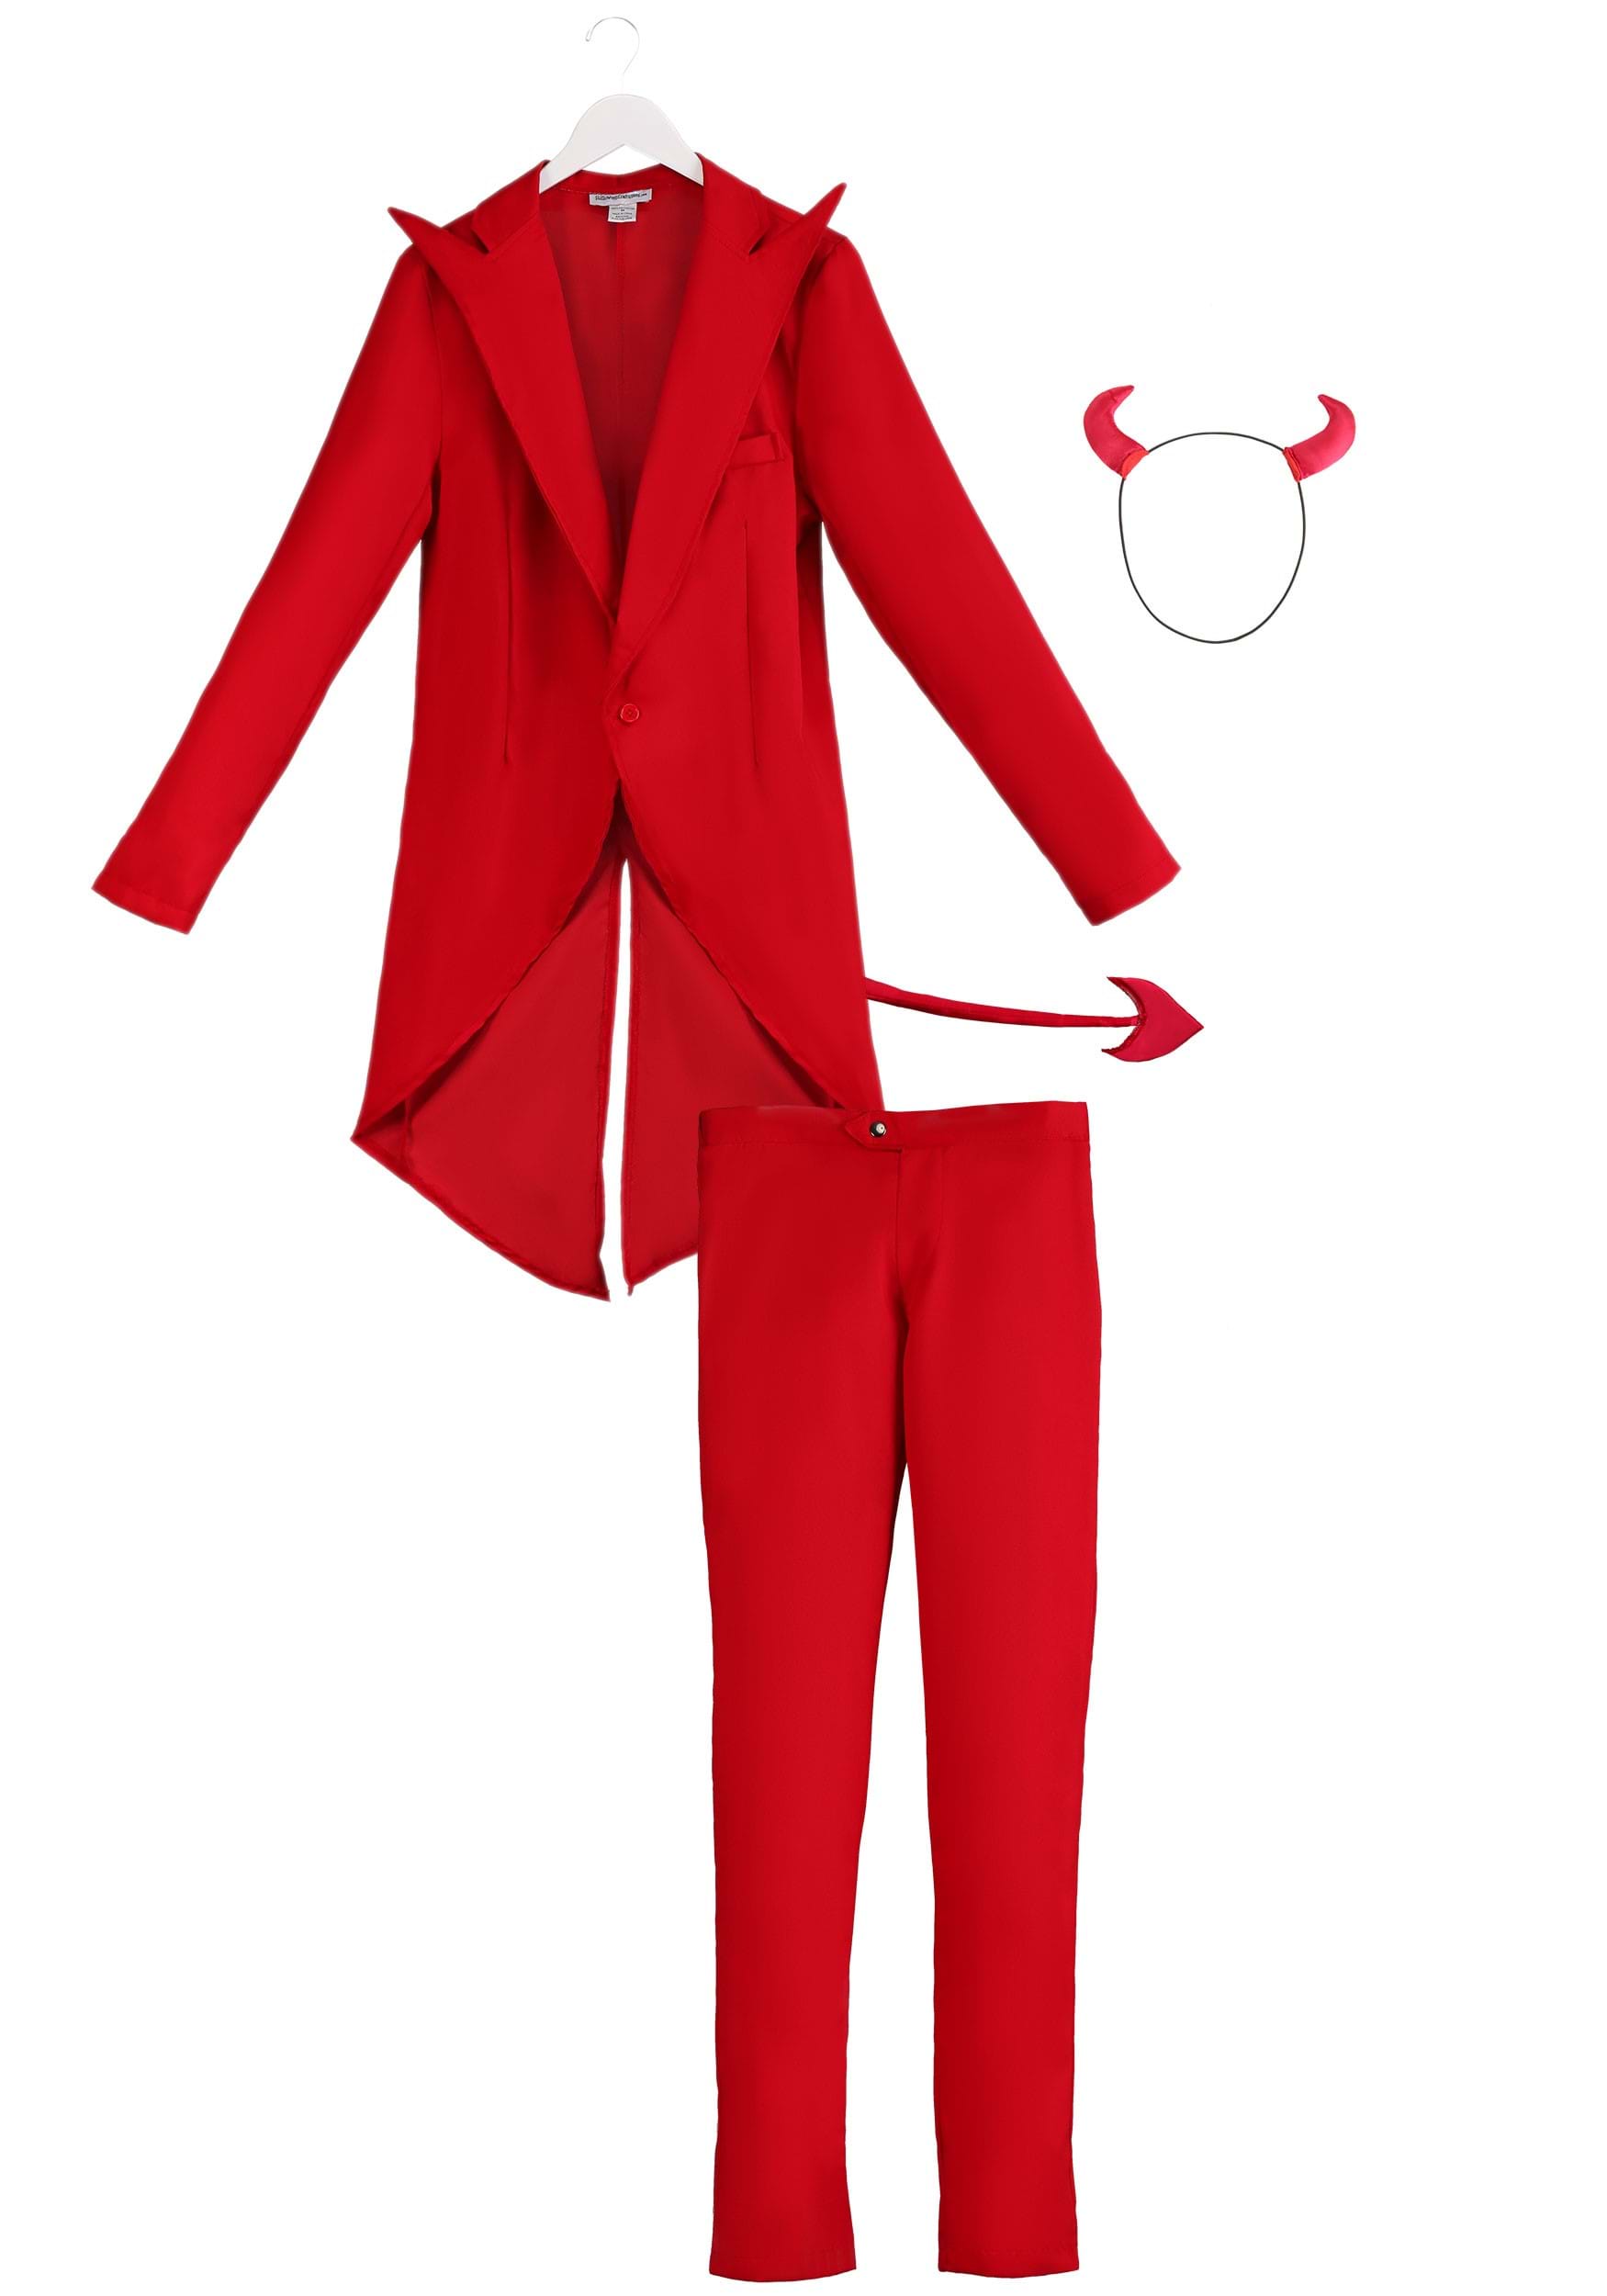 Красный костюм в школу. Красный карнавальный костюм. Маскарадные костюмы в Красном цвете. Красный костюм для мальчика. Карнавальные костюм красного цвета.